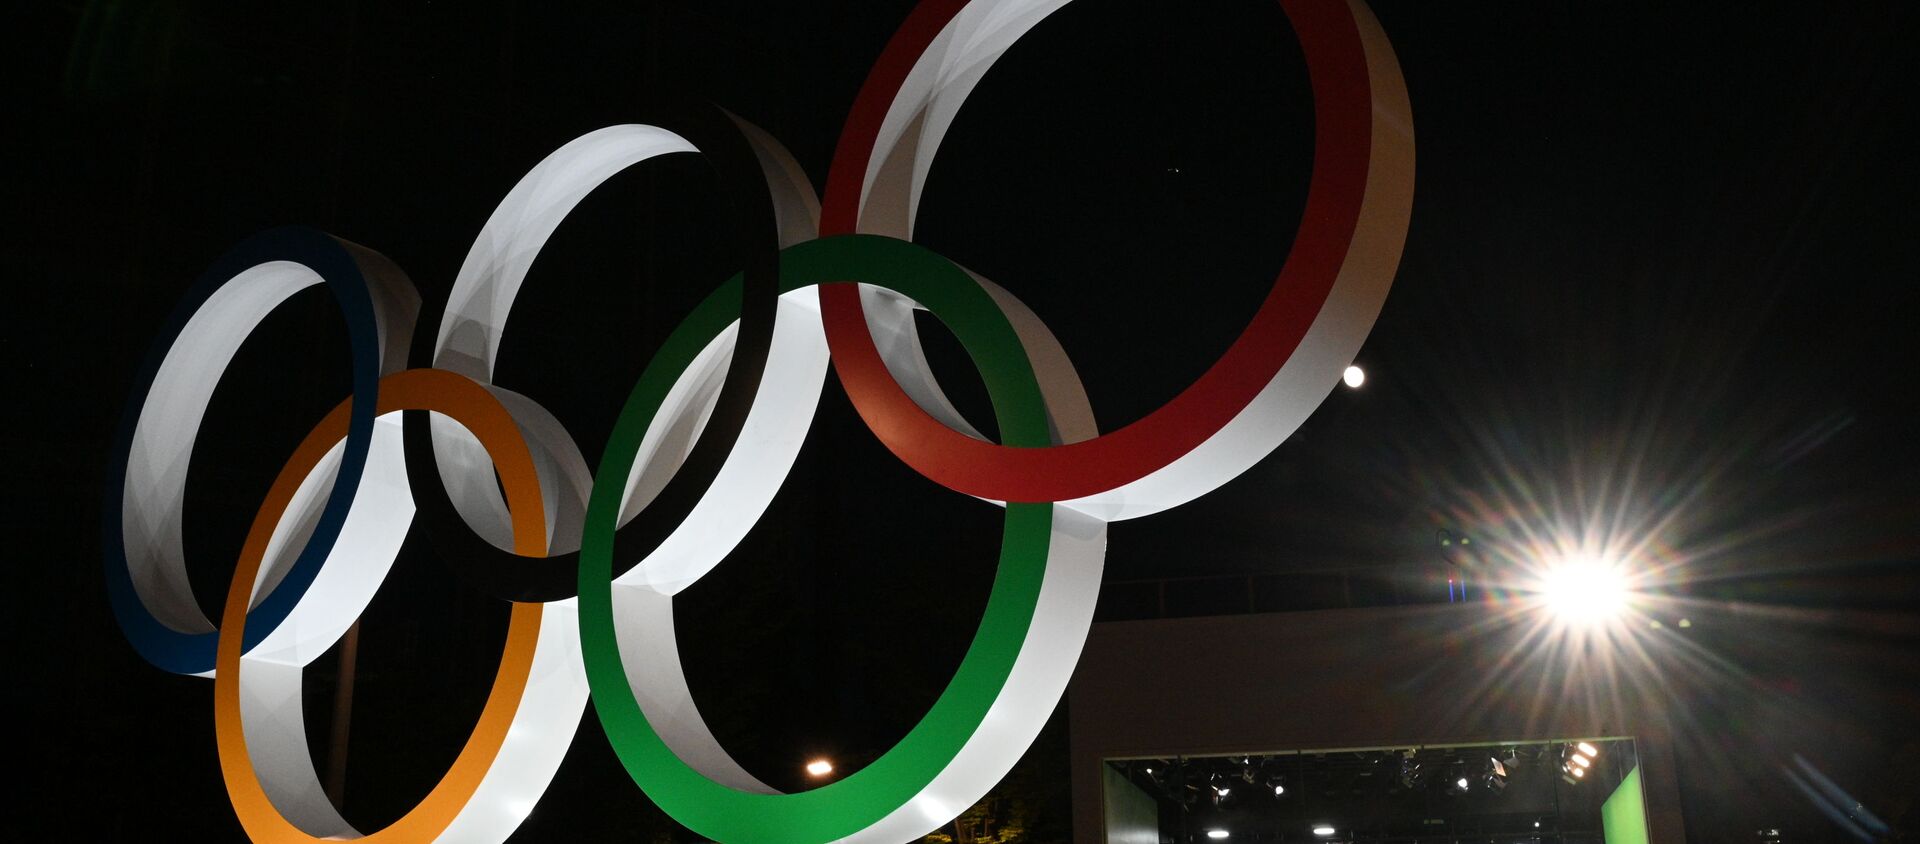 Монумент из пяти олимпийских колец у Национального олимпийского стадиона в Токио - Sputnik Грузия, 1920, 22.07.2021